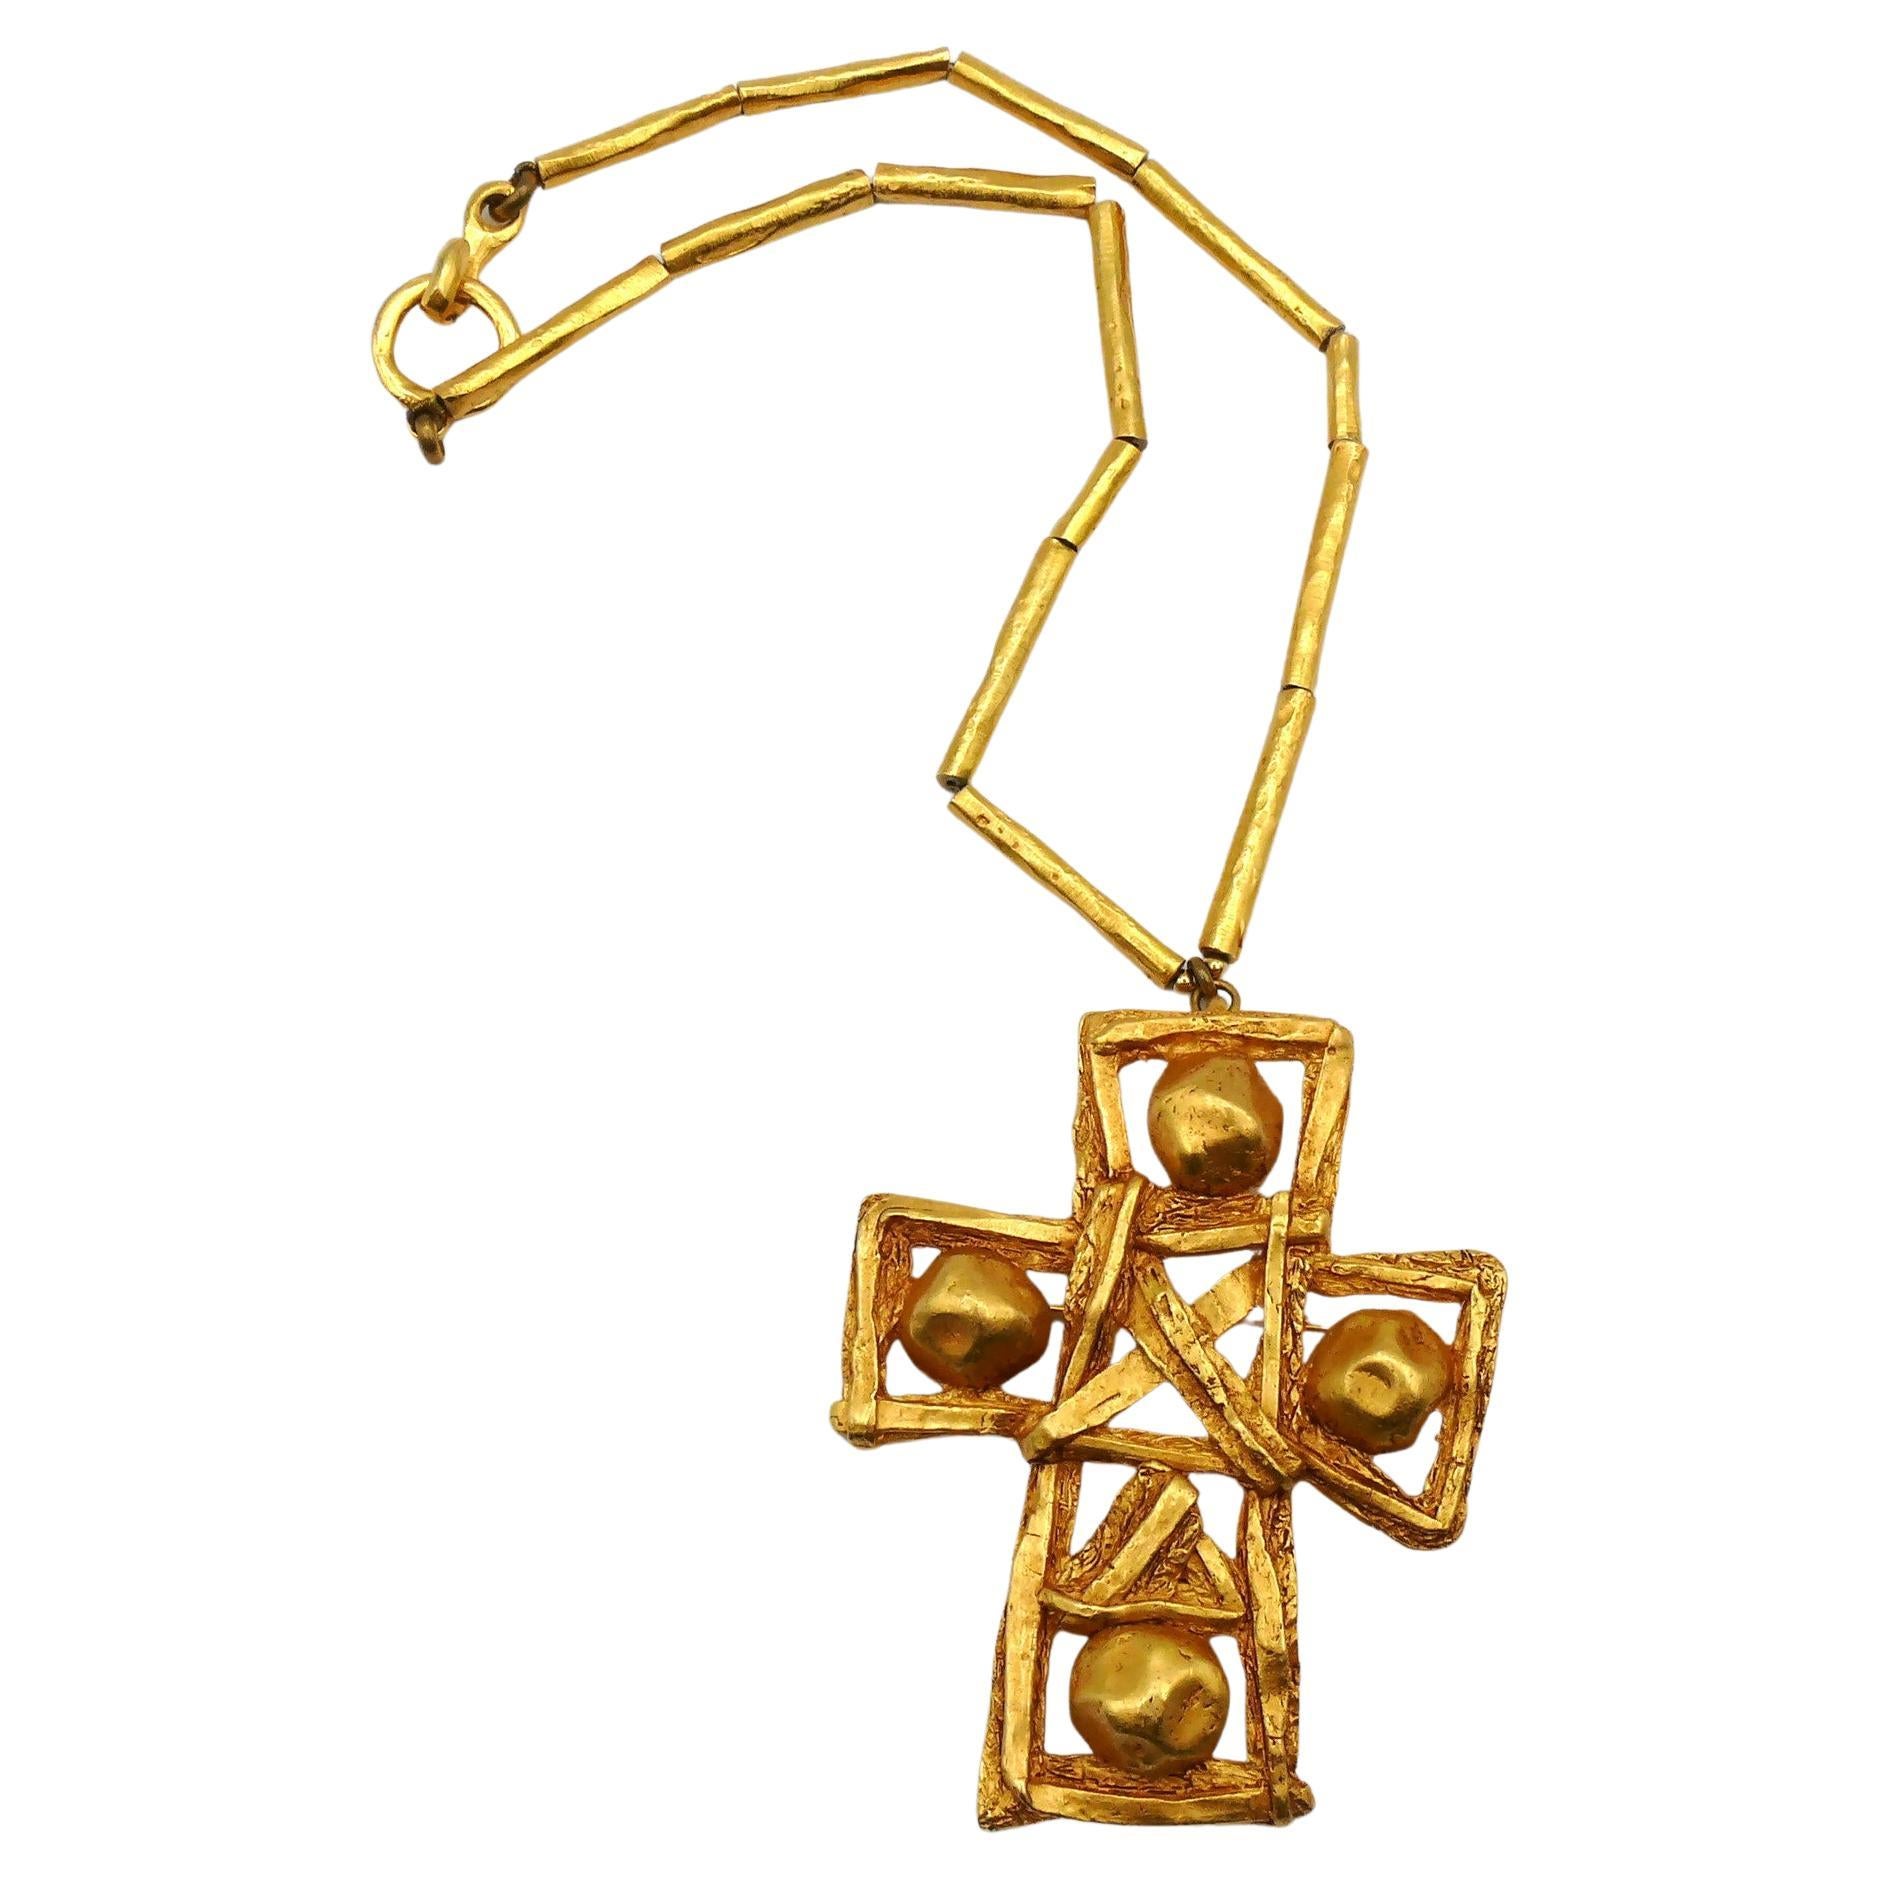 CHRISTIAN LACROIX Vintage Massive Gold Tone Cross Pendant Necklace